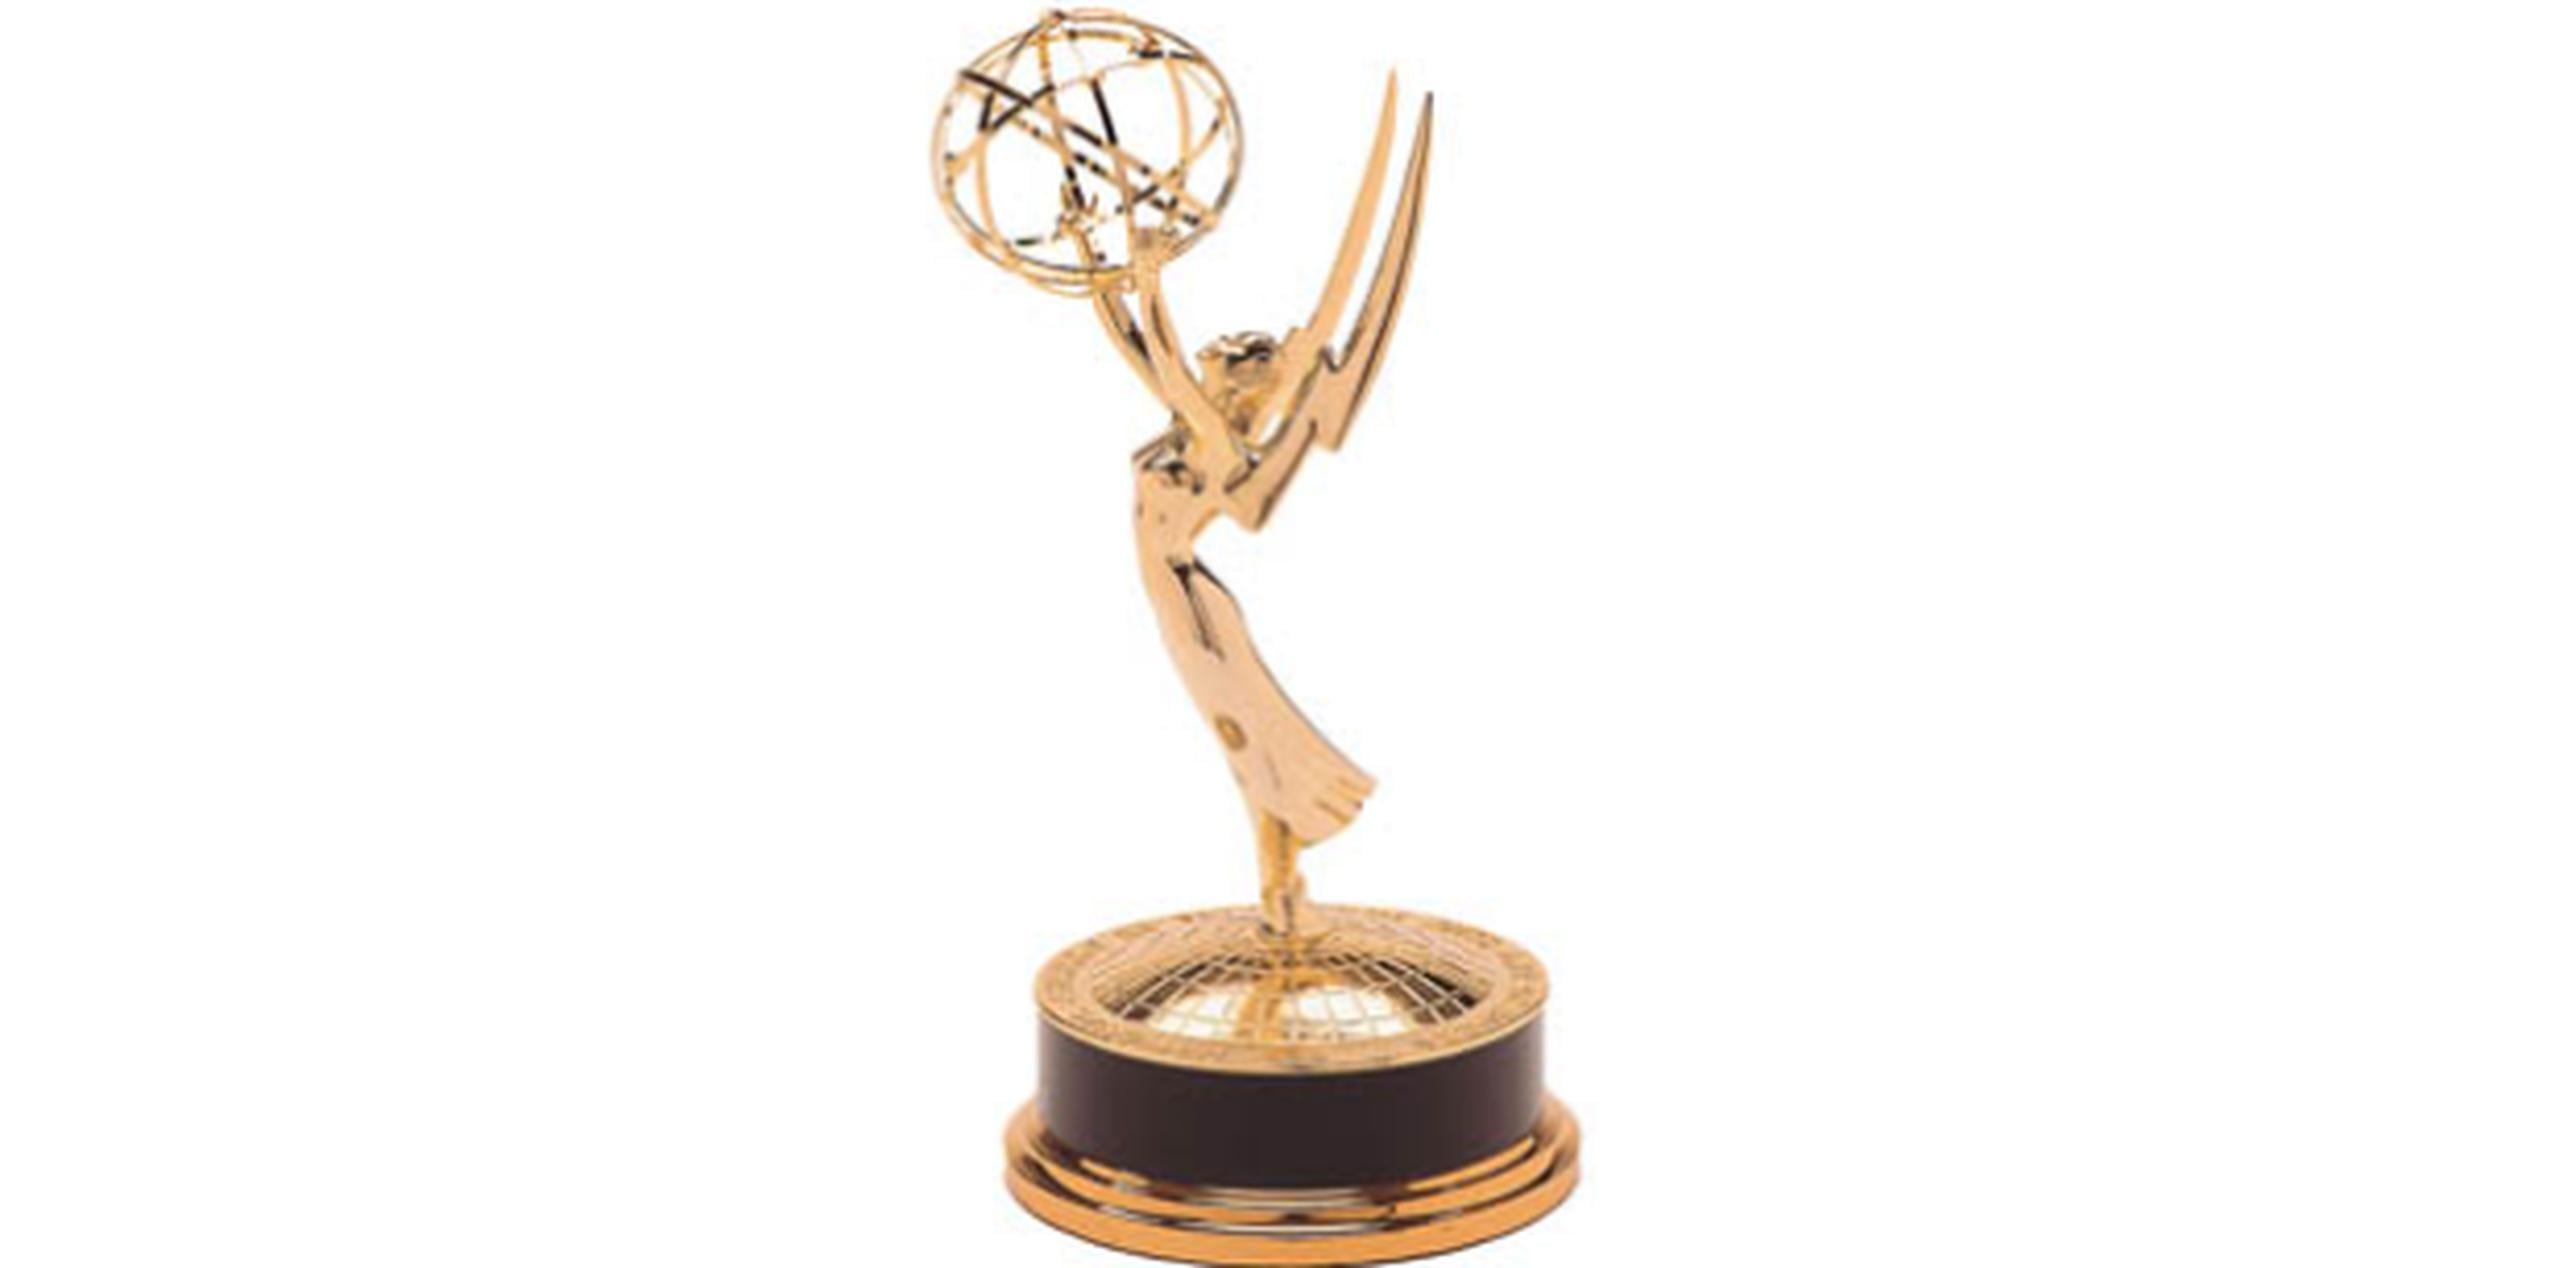 Las nominaciones para los premios Emmy de 2016 serán anunciadas el 9 de junio. (Archivo)